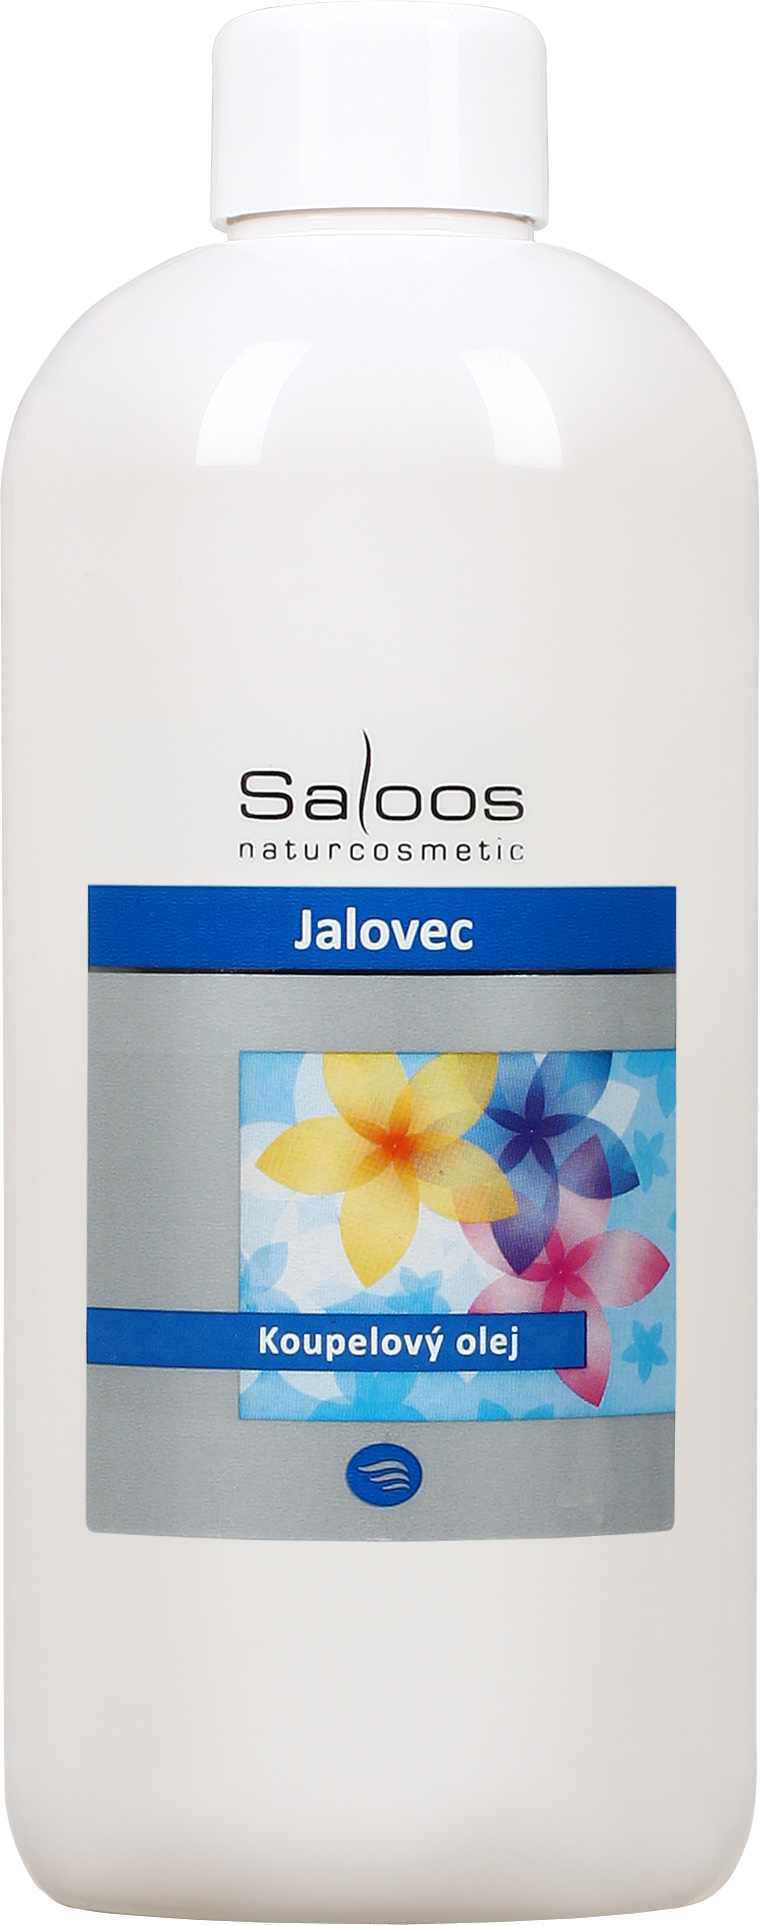 Saloos Jalovec - koupelový olej Balení: 1000 ml